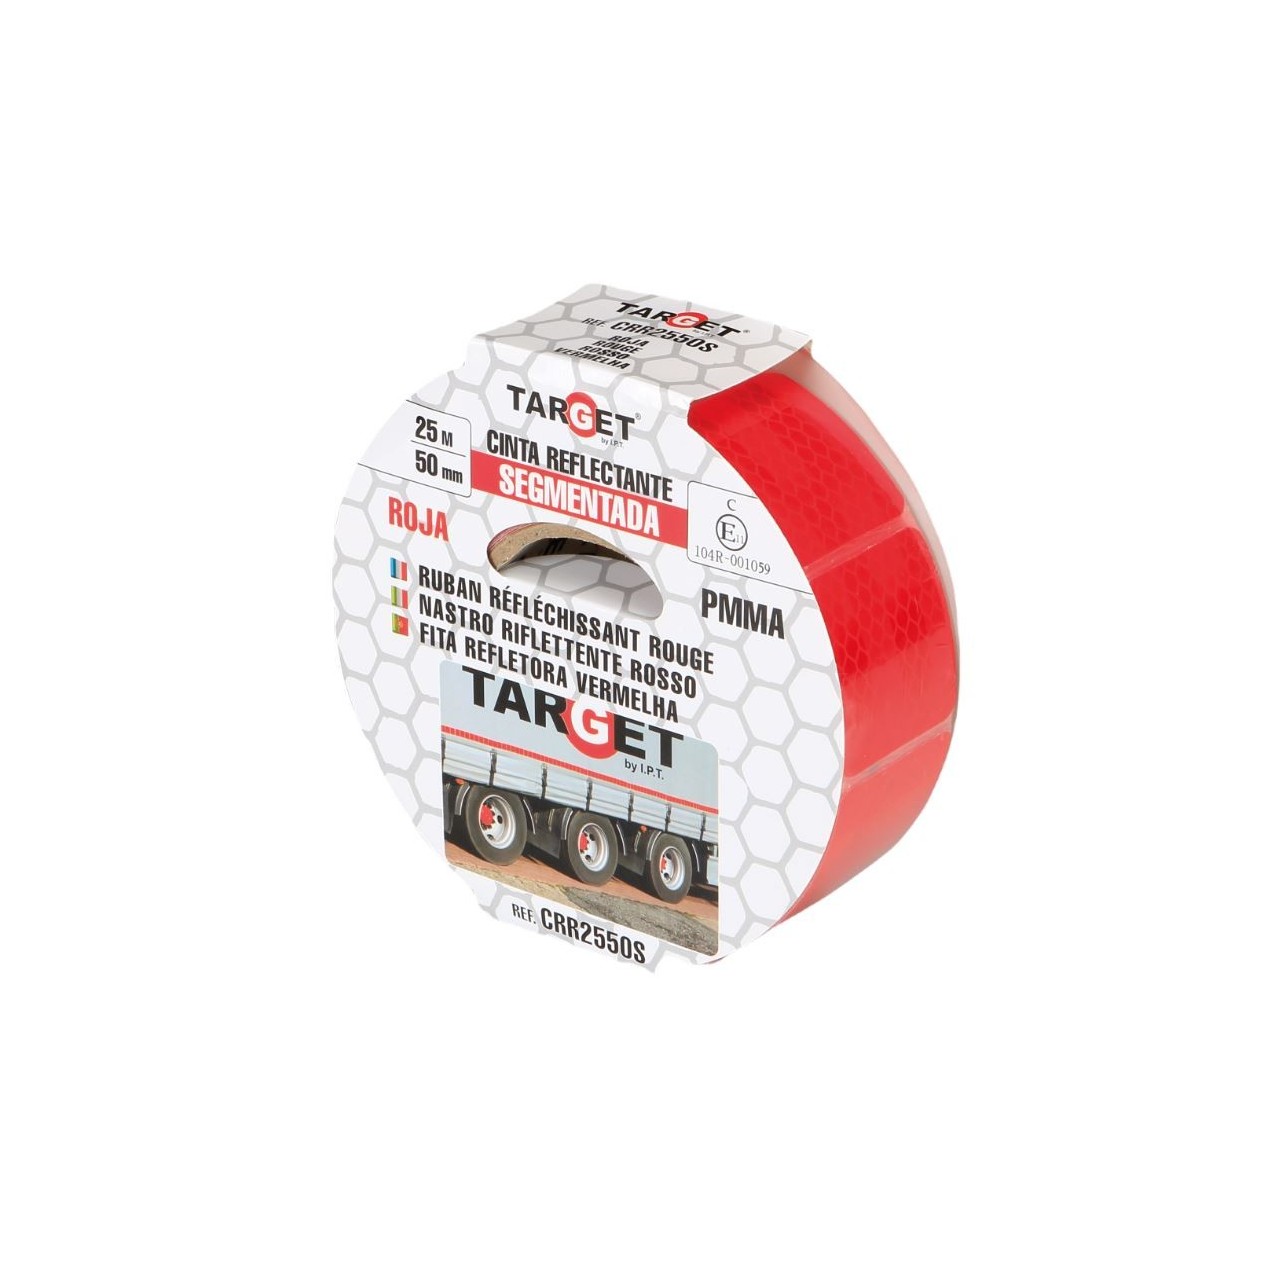 Cinta adhesiva reflectante PMMA roja segmentada certificación ECE-104